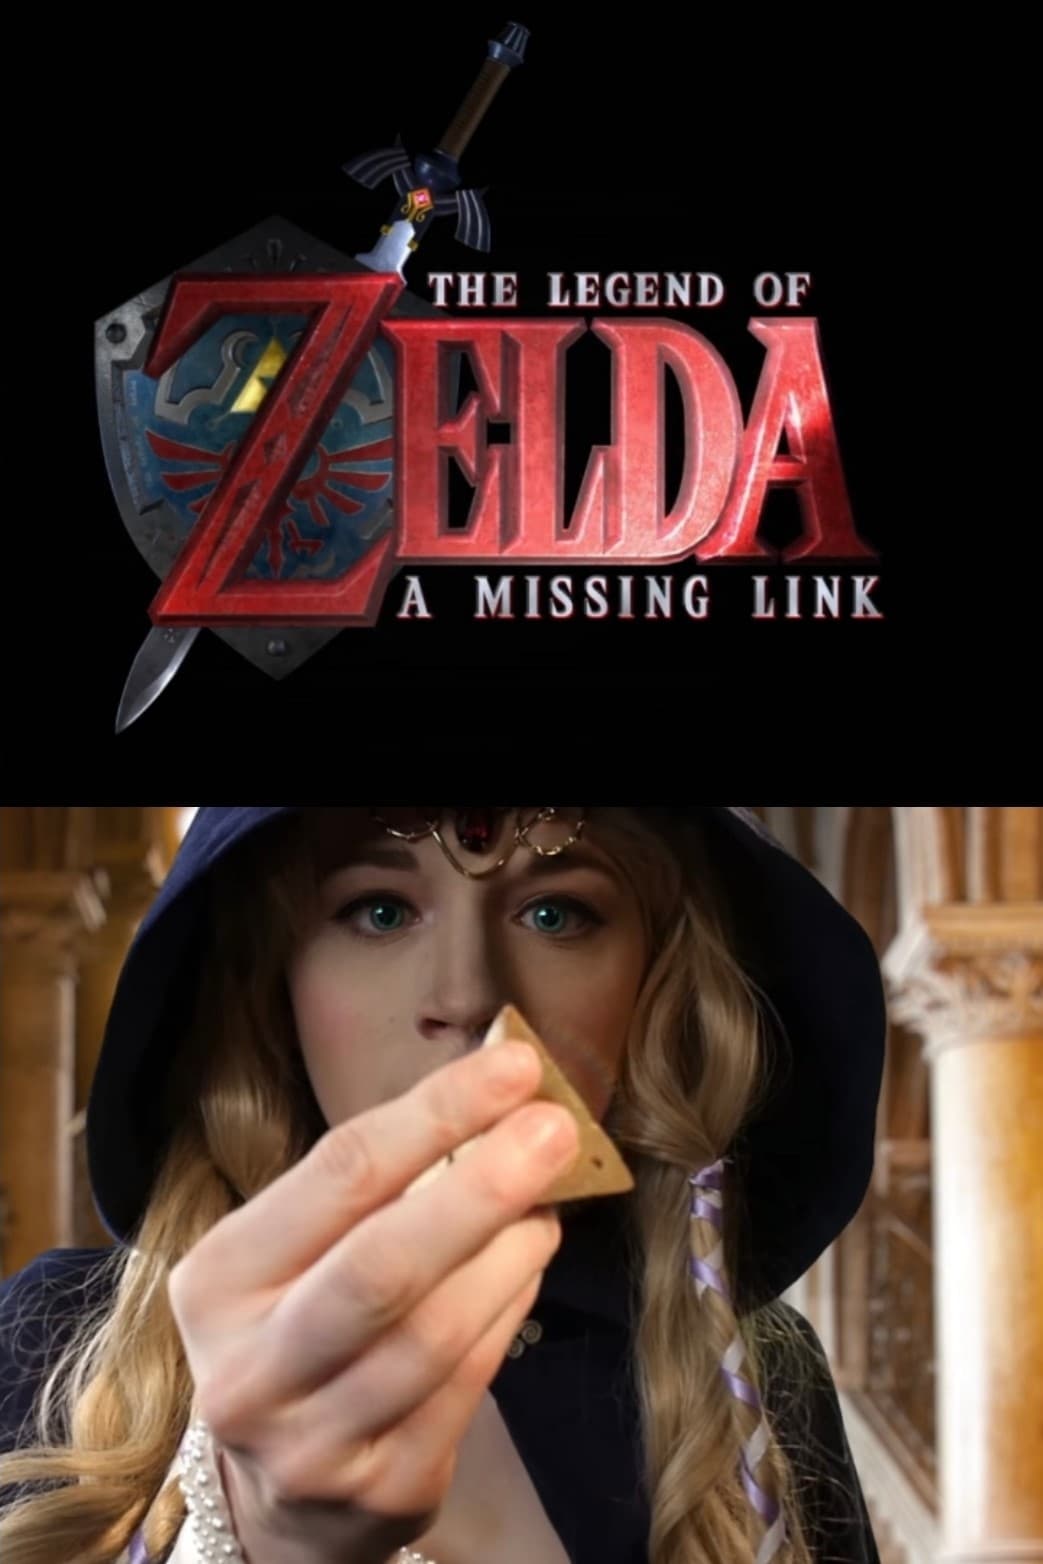 The legend of Zelda : A Missing Link